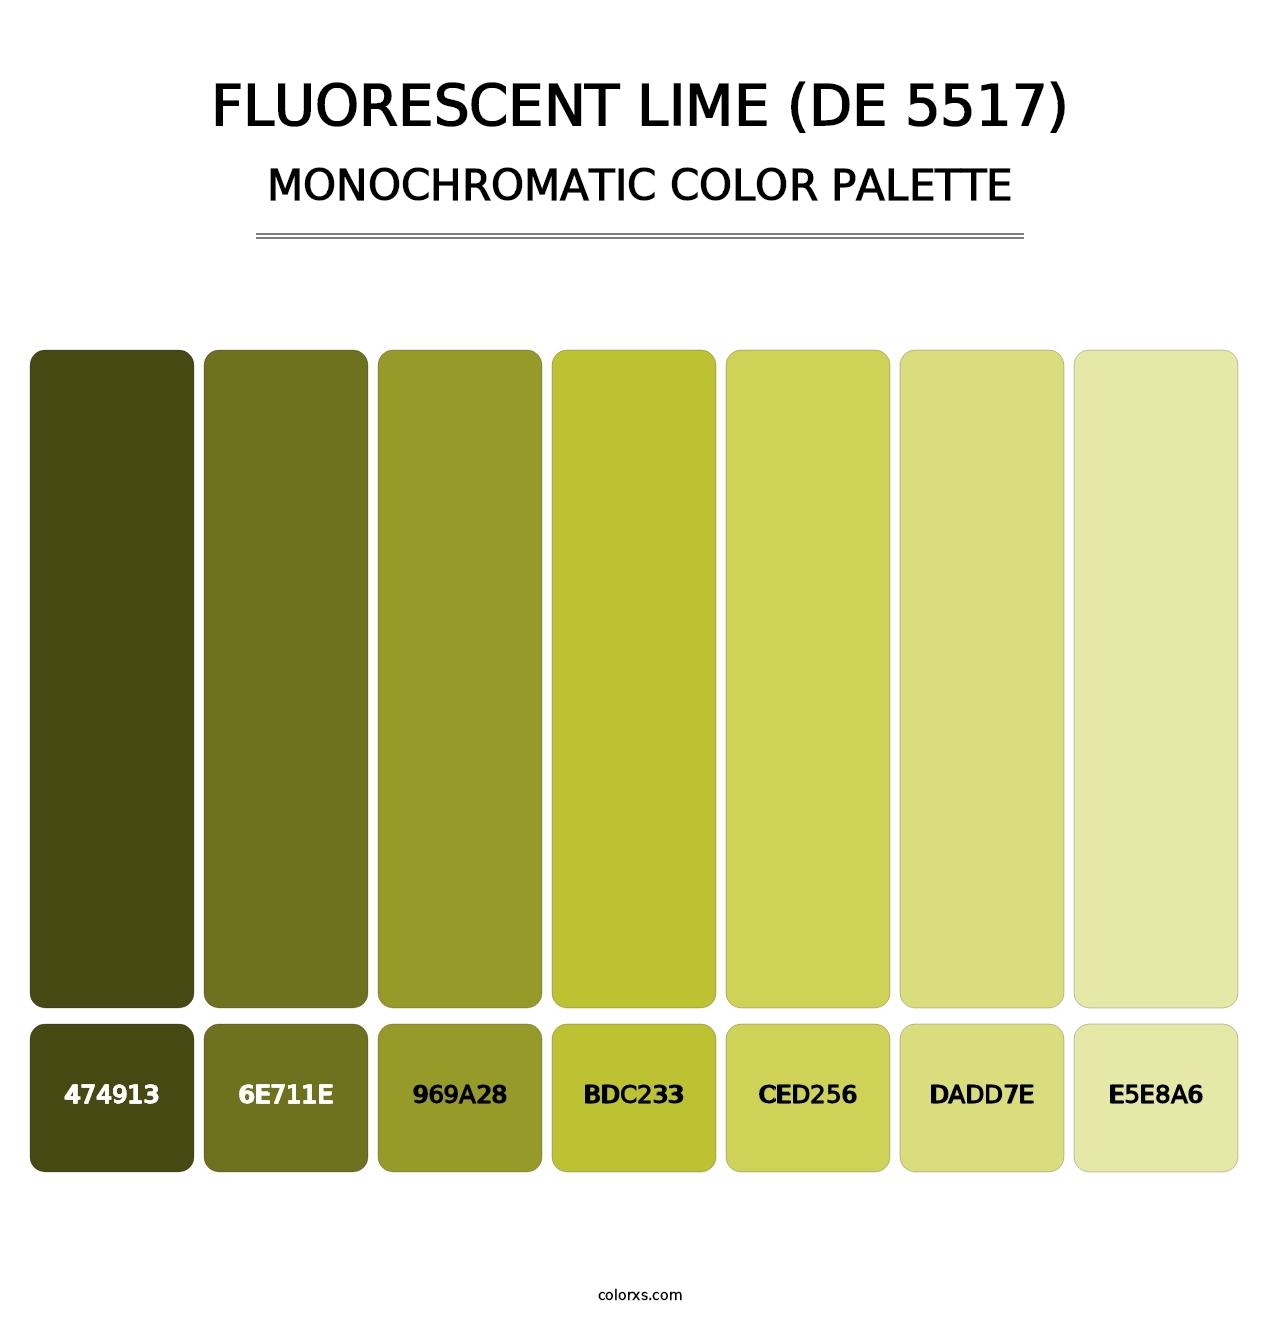 Fluorescent Lime (DE 5517) - Monochromatic Color Palette